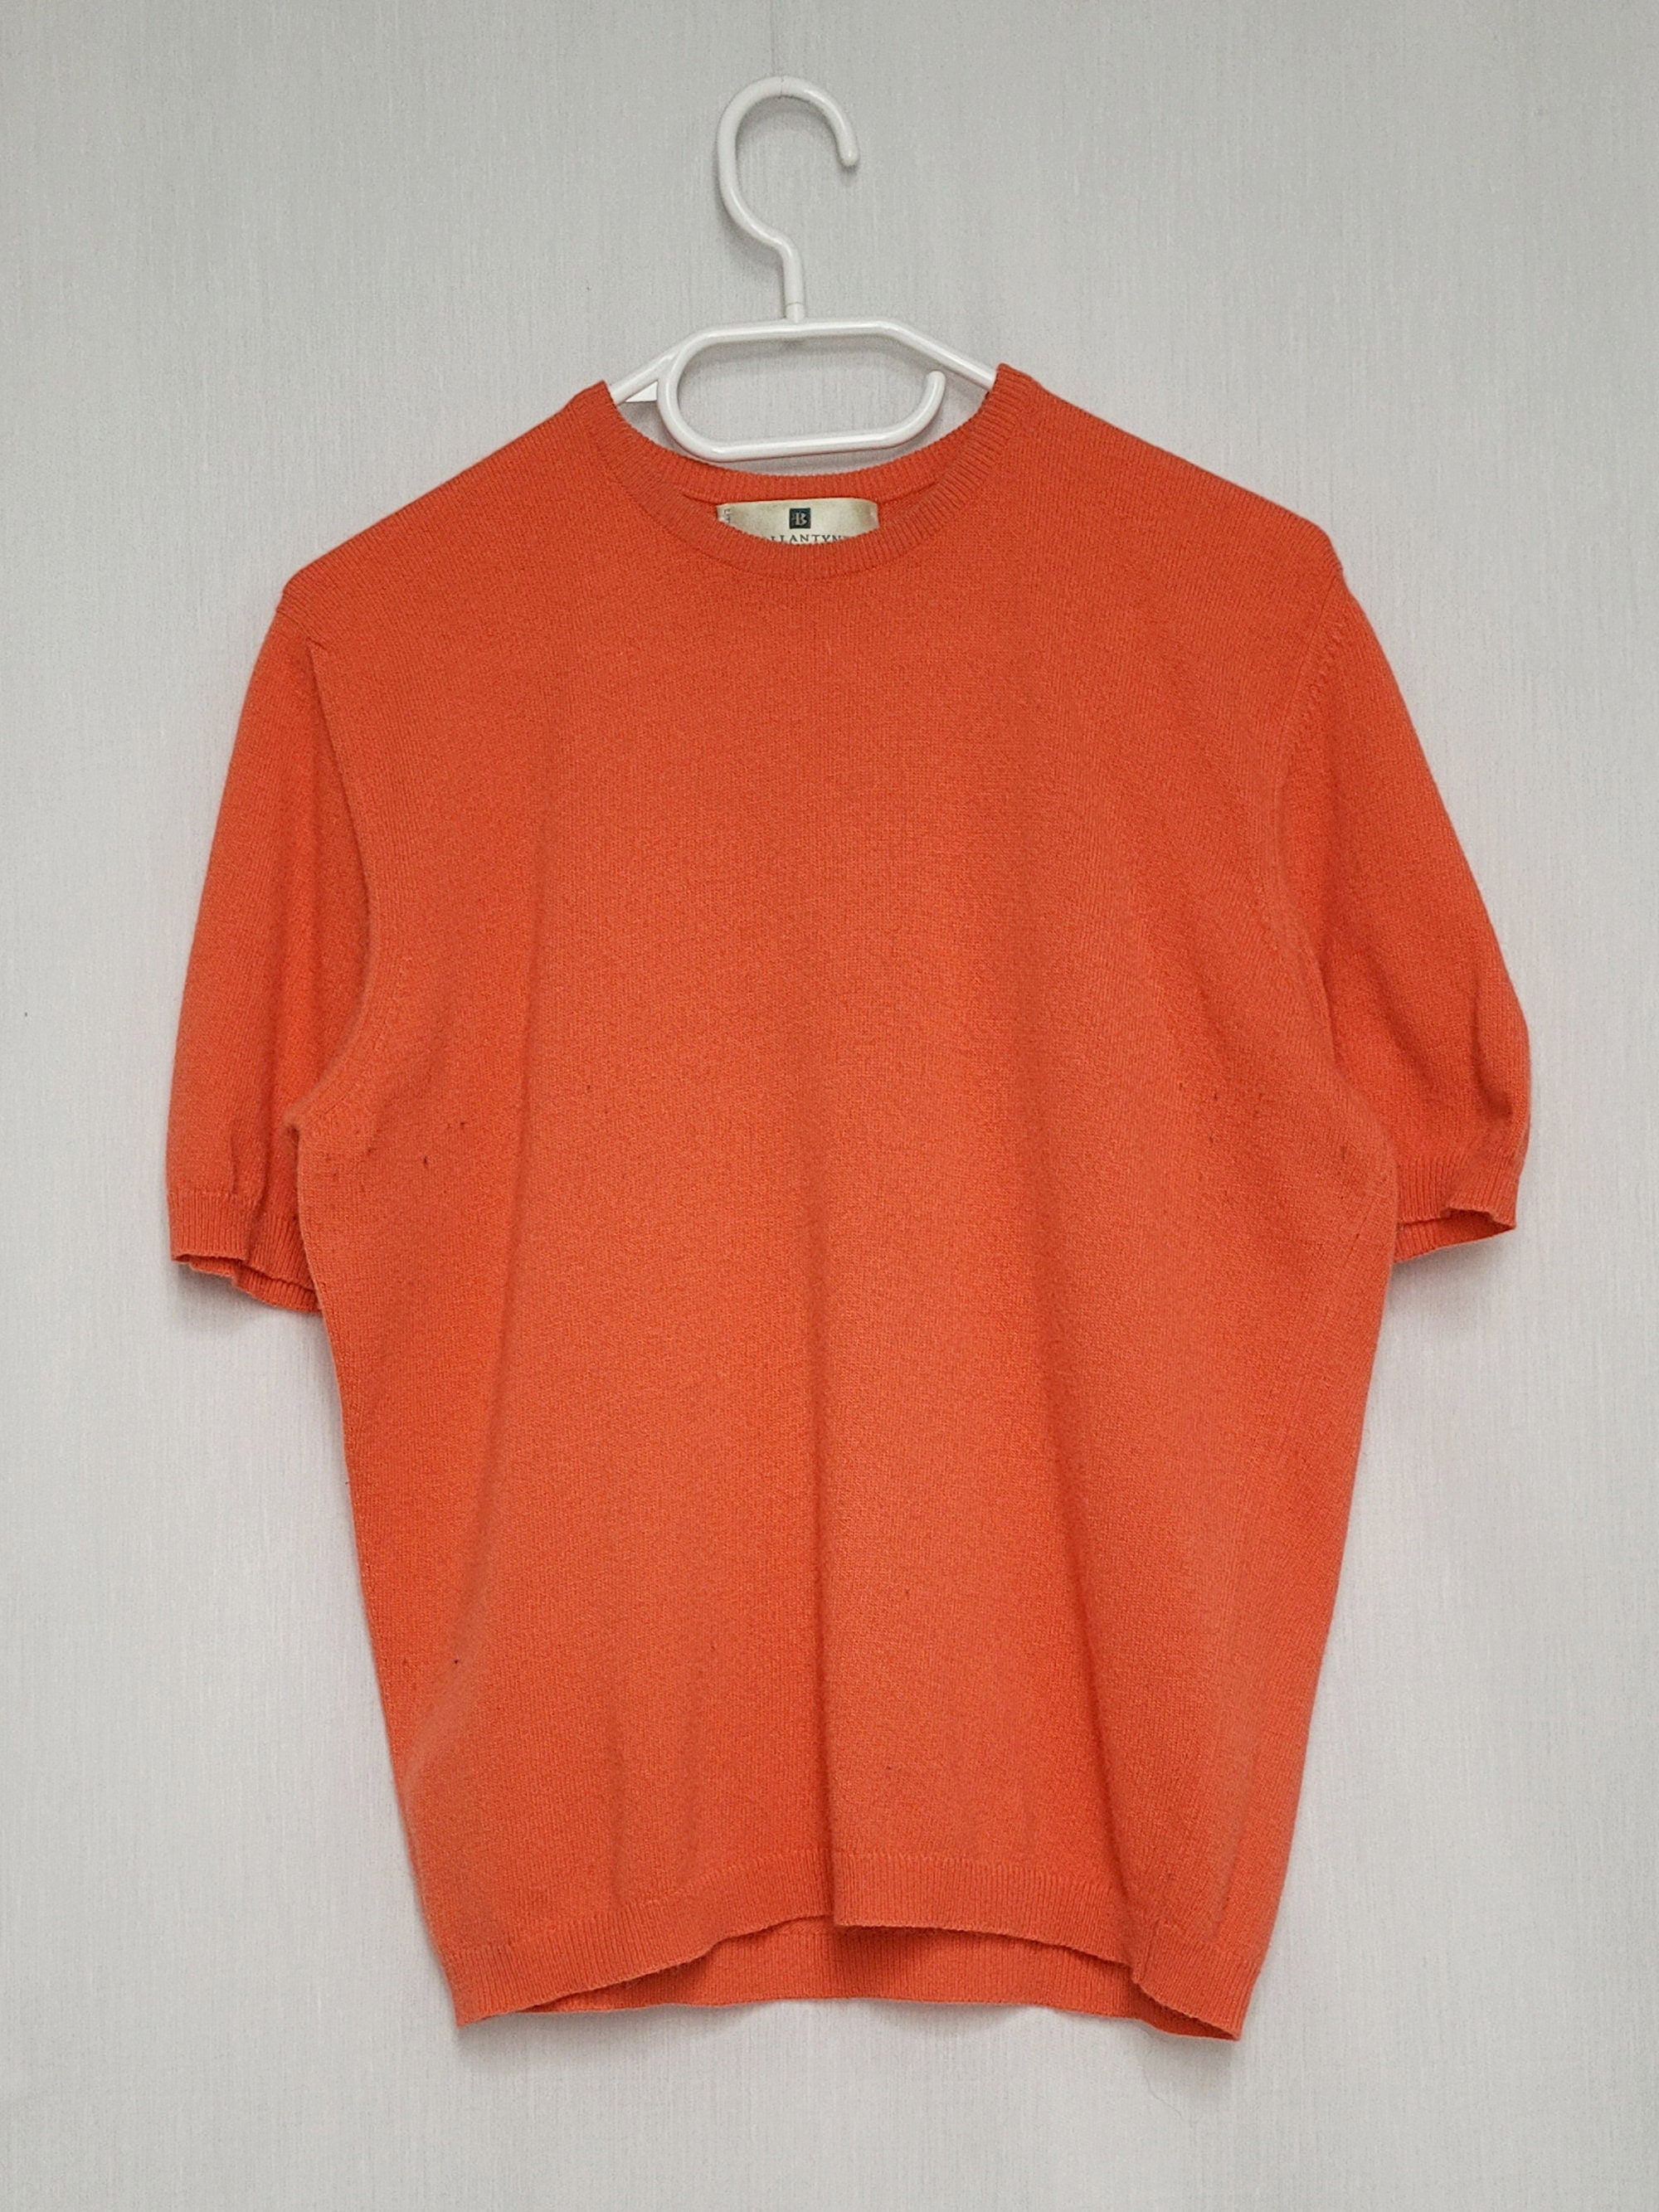 Vintage 90s minimalist cashmere knitted salamander orange crew top